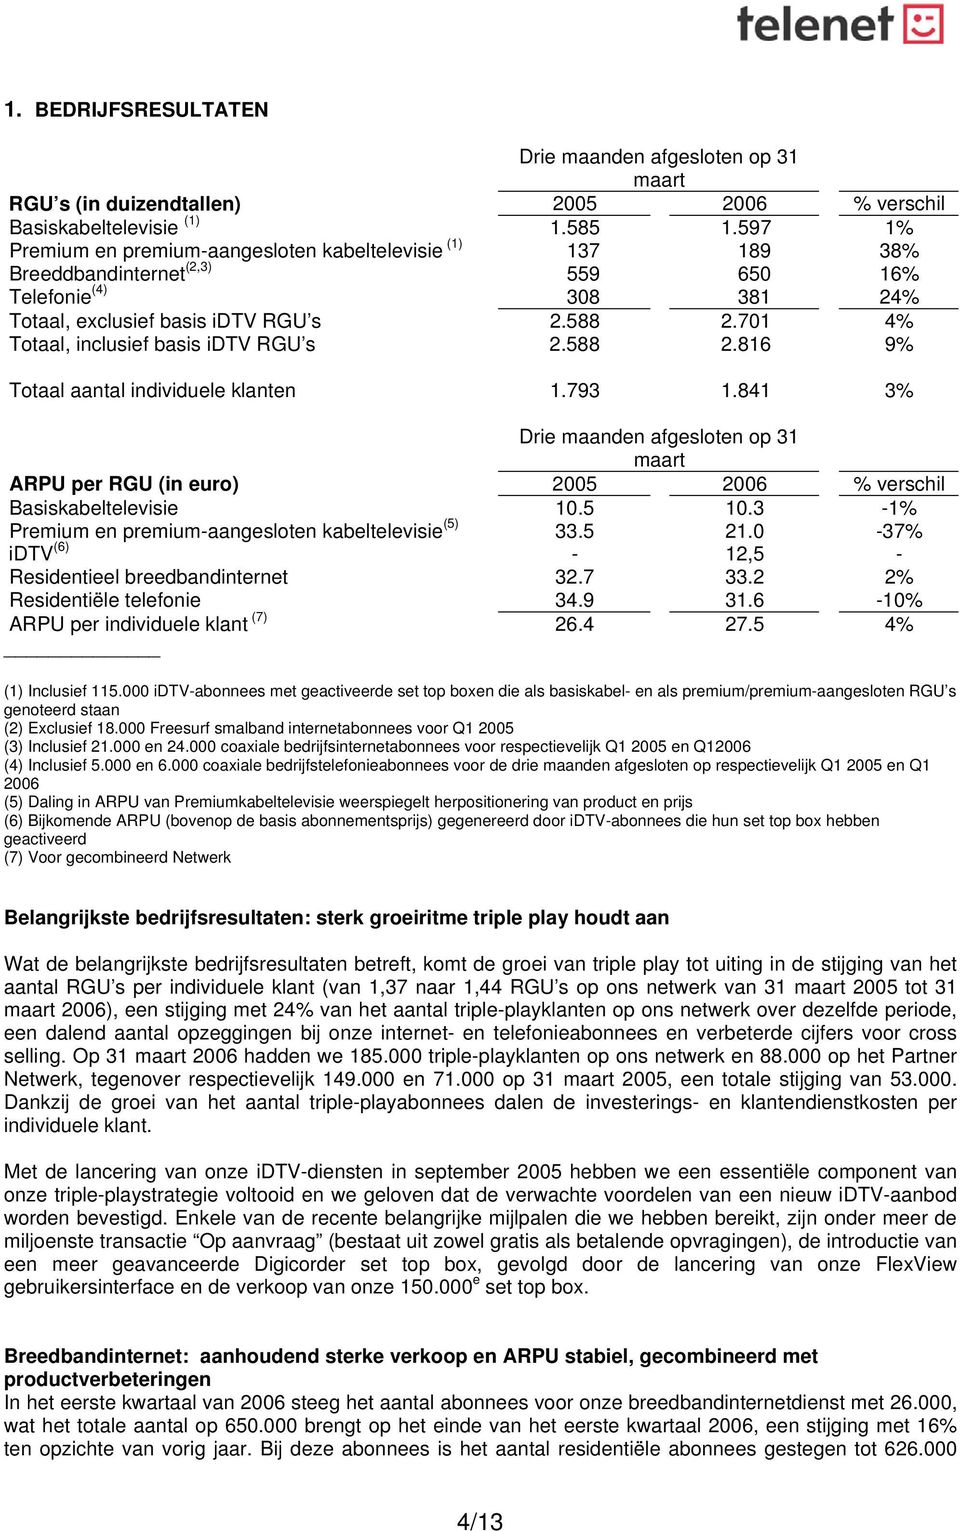 841 3% 1% 38% 16% 24% Drie maanden afgesloten op 31 maart ARPU per RGU (in euro) 2005 2006 % verschil Basiskabeltelevisie Premium en premium-aangesloten kabeltelevisie (5) idtv (6) Residentieel